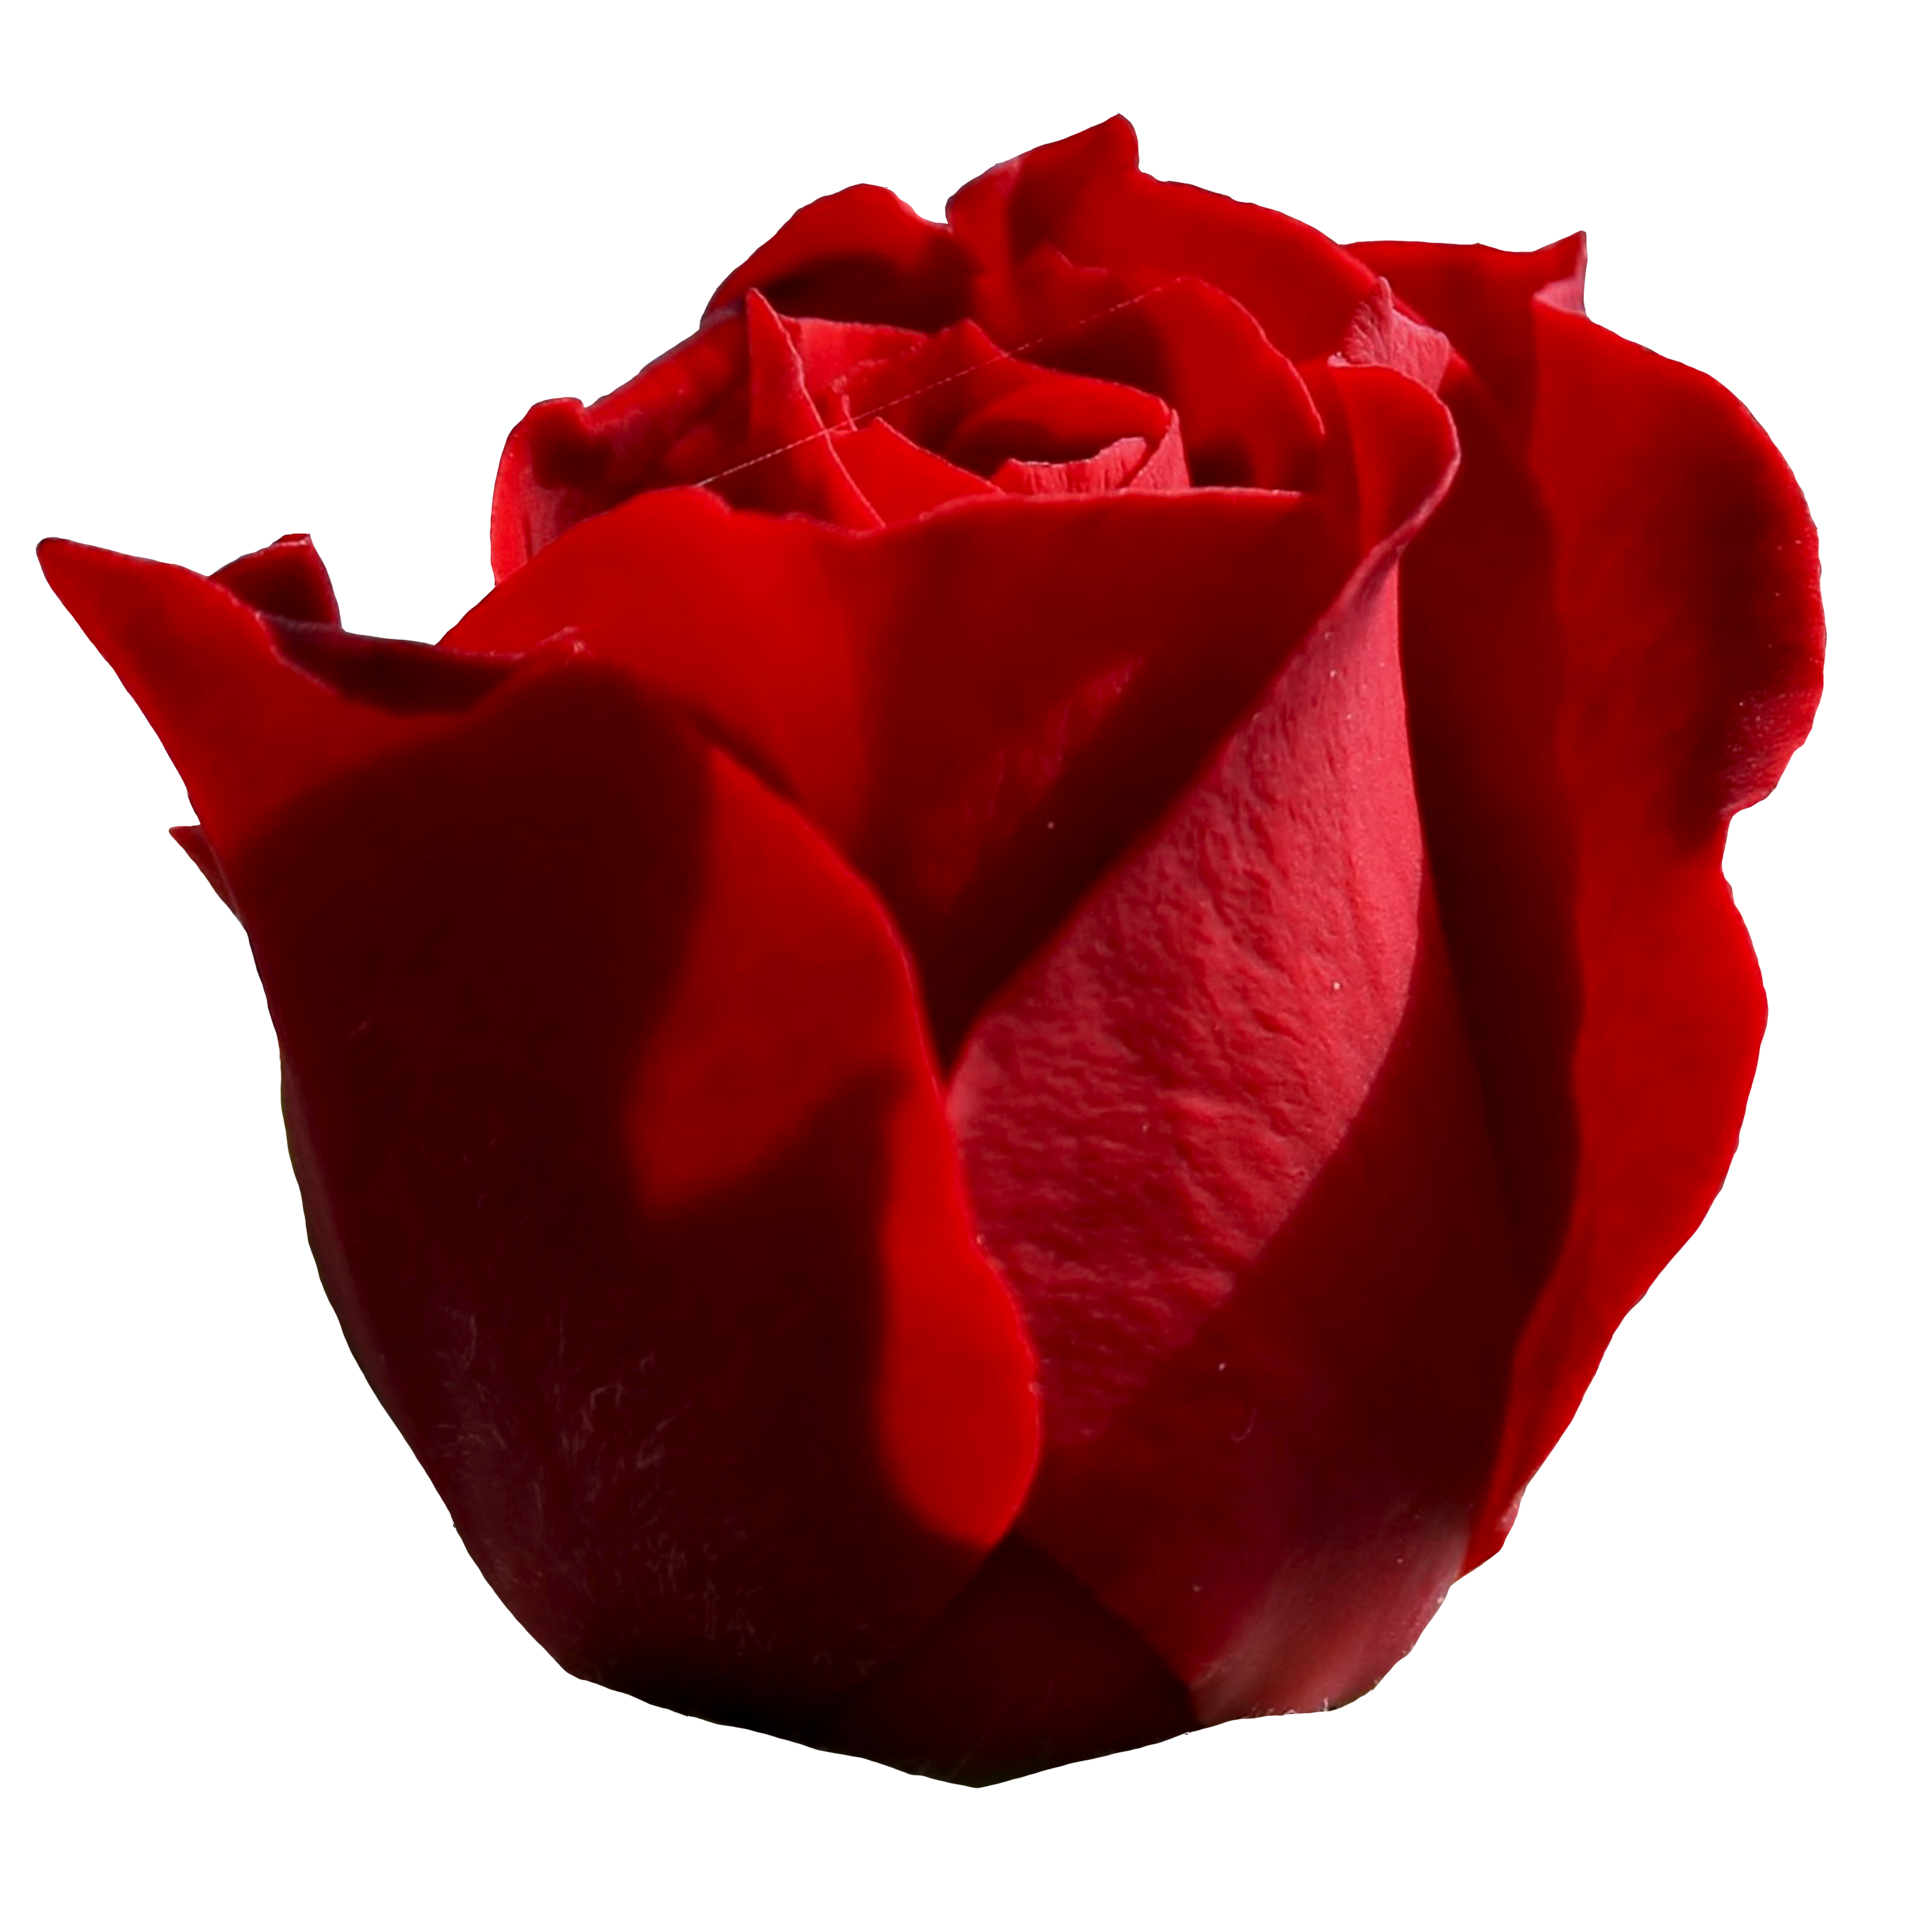 Đây chính là hình ảnh hoàn hảo cho những tín đồ yêu hoa hồng - đầy đủ hoa hồng màu đỏ trong suốt. Hãy tận hưởng vẻ đẹp tinh tế và đầy lôi cuốn của từng cánh hoa khi bạn nhìn ngắm chúng trên màn hình của mình.